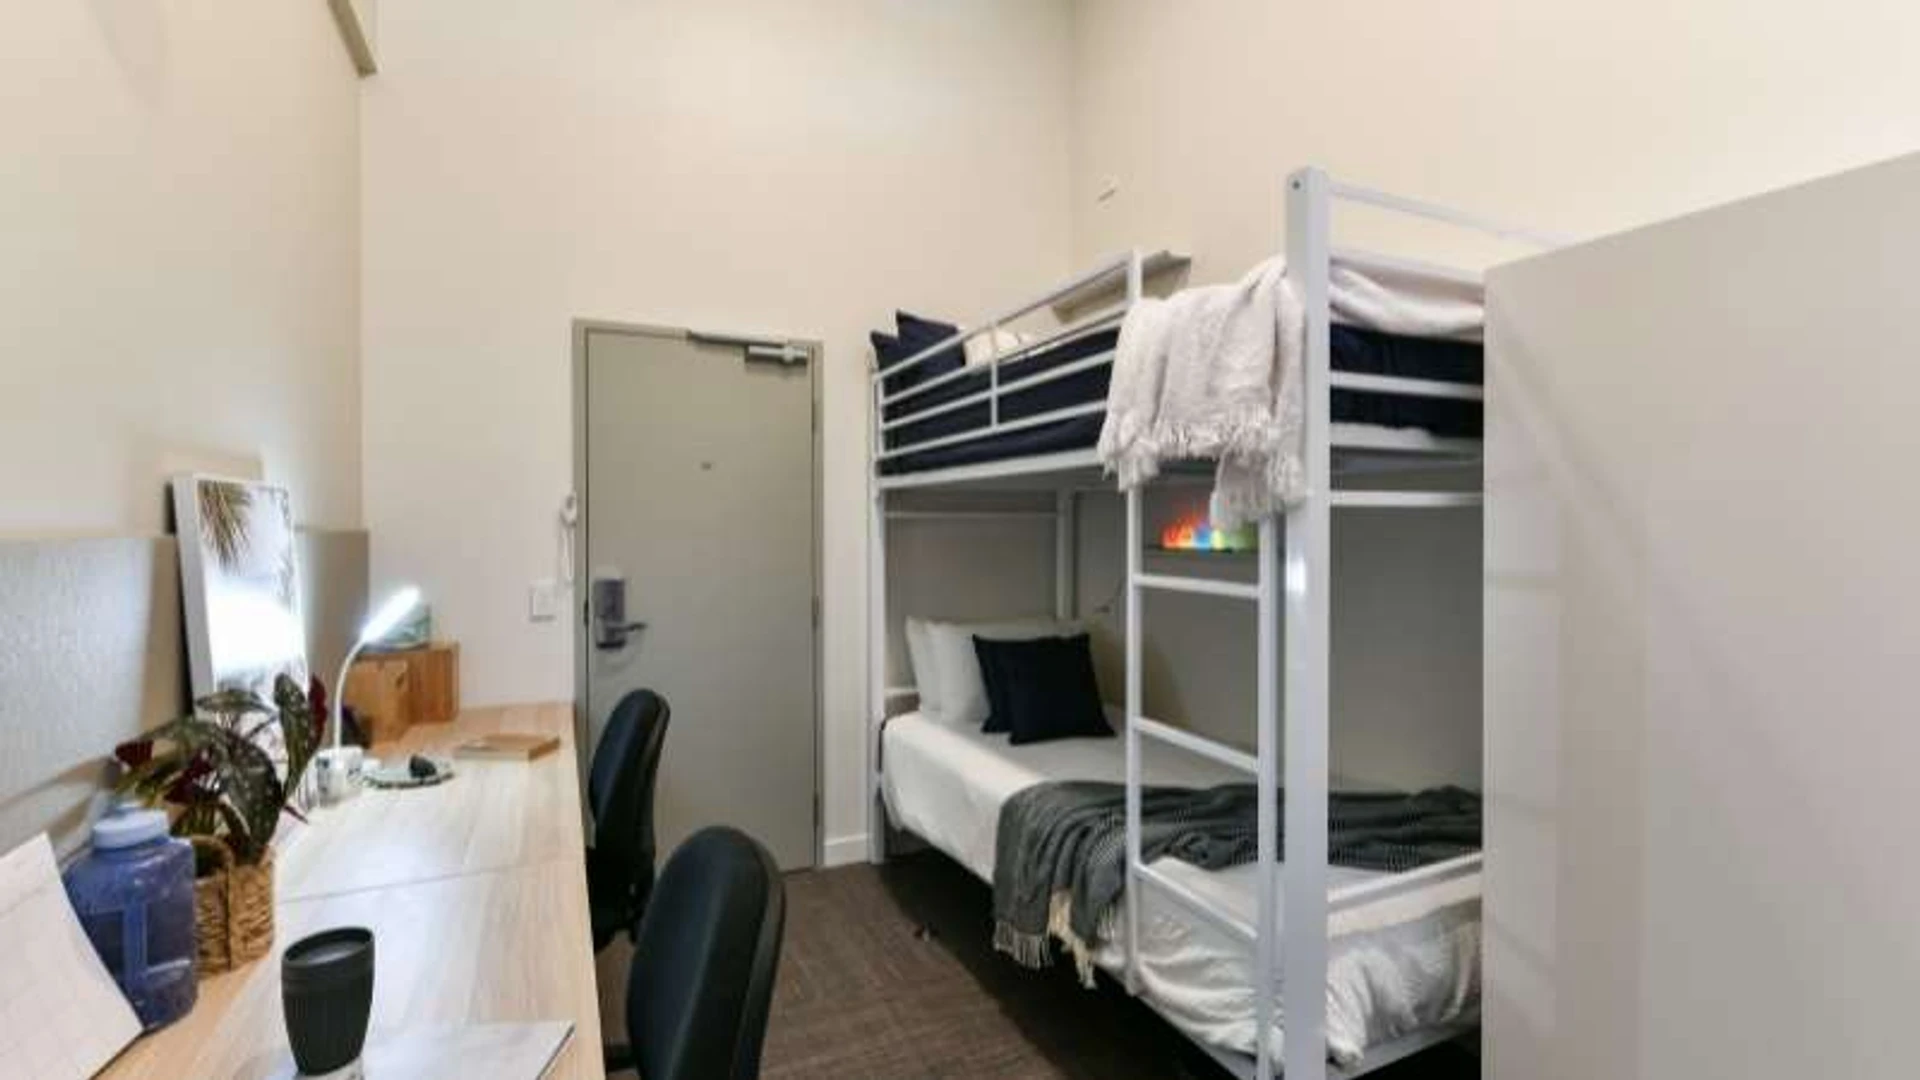 Gemeinsames Zimmer mit einem anderen Studierenden in Brisbane